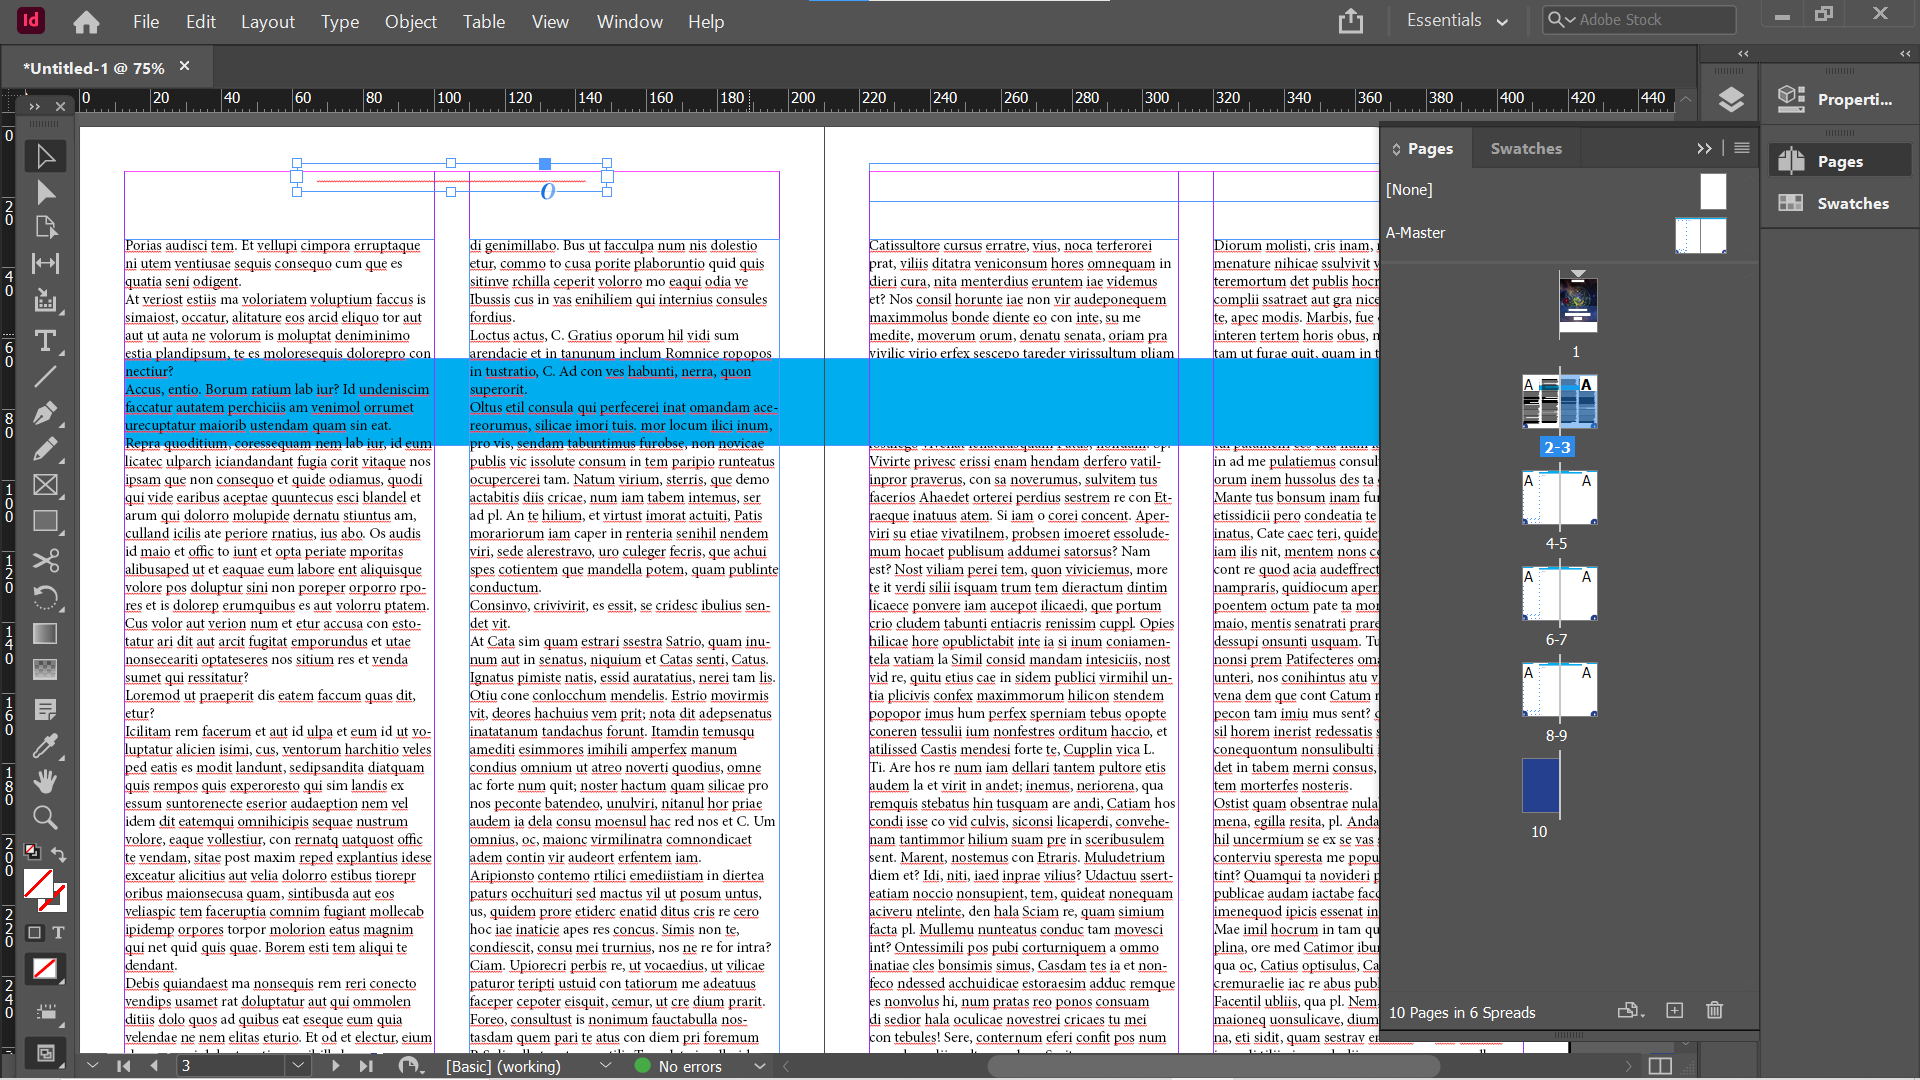 InDesign accidental move - Come utilizzare le pagine master di Adobe InDesign per semplificare il flusso di lavoro